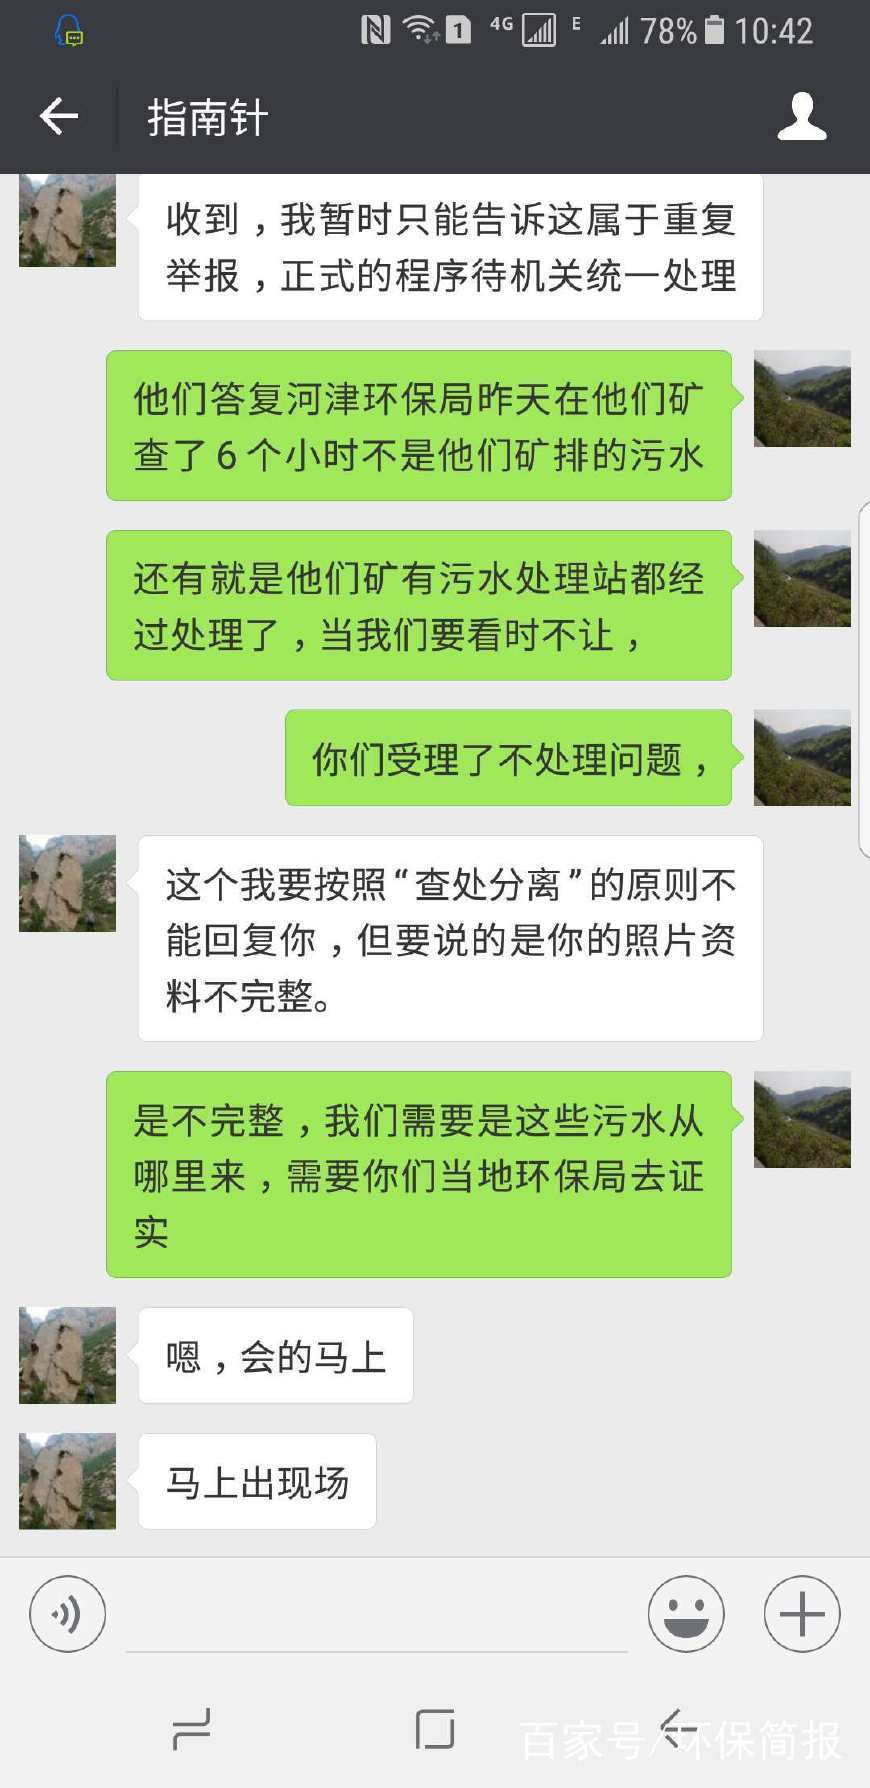 团河津薛虎沟煤业污水外排环保局横刀立马保密